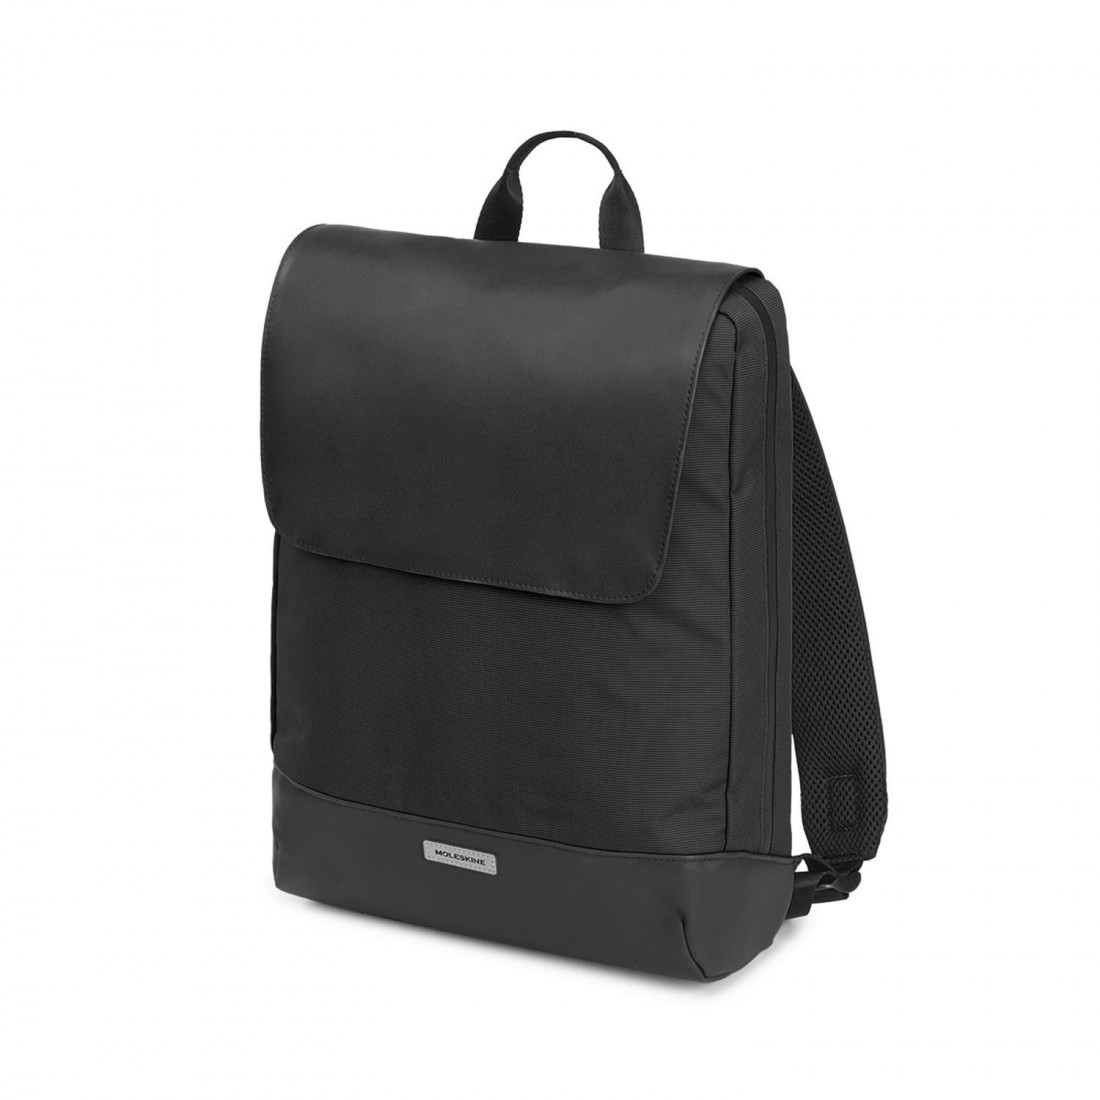 Moleskine Metro slim backpack black